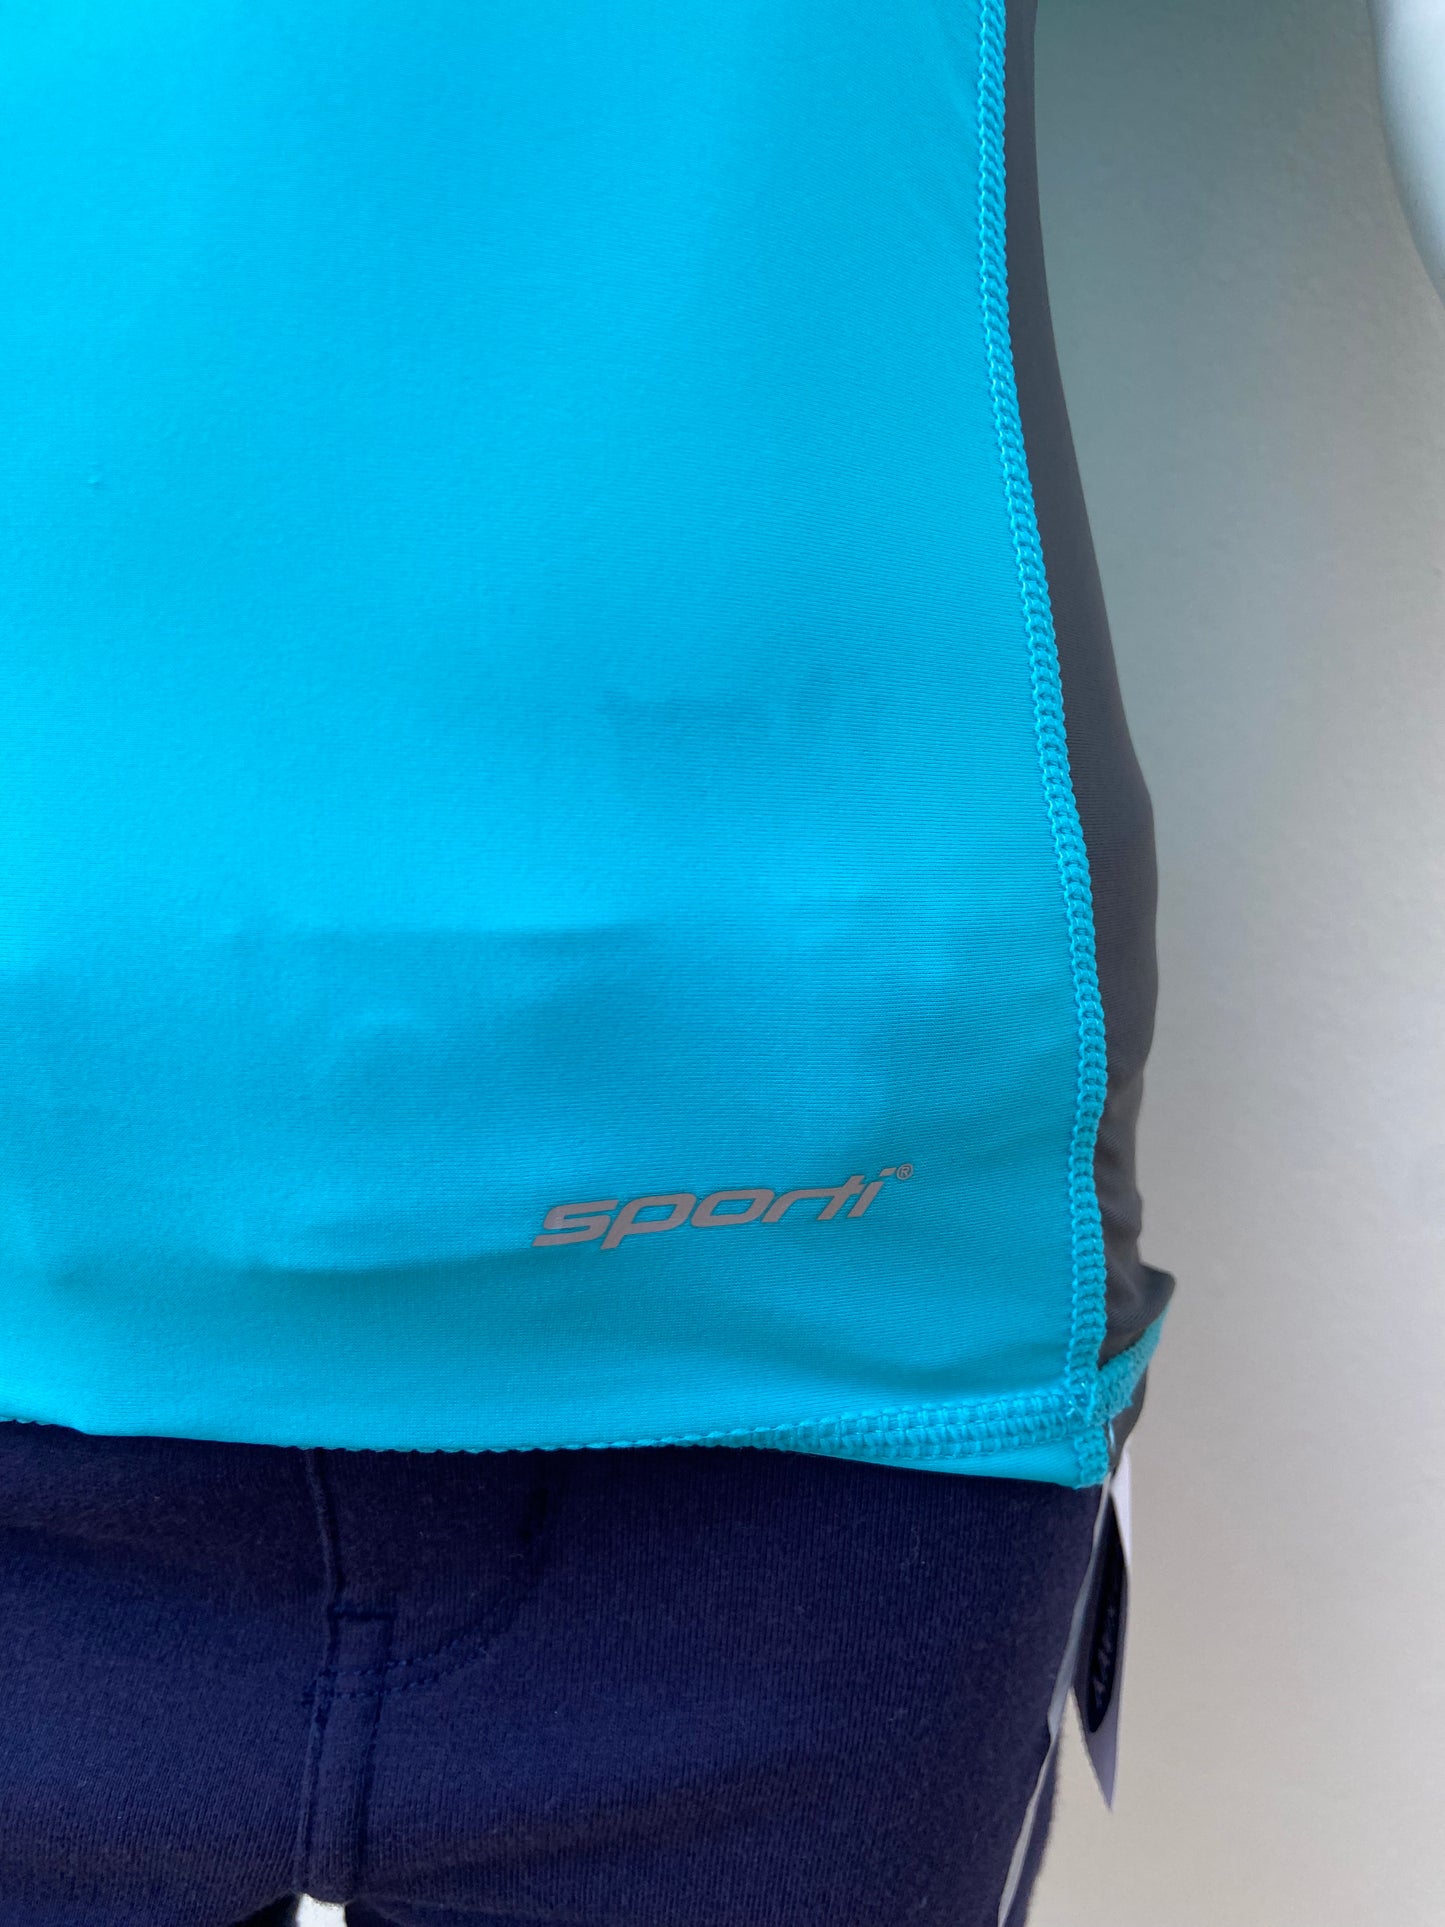 T-shirt de traje de baño Sporti original de color azul con raya a los lados en color gris oscuro con protección UV 50+ diseño de letra SPORTI en la parte de abajo en color plateado